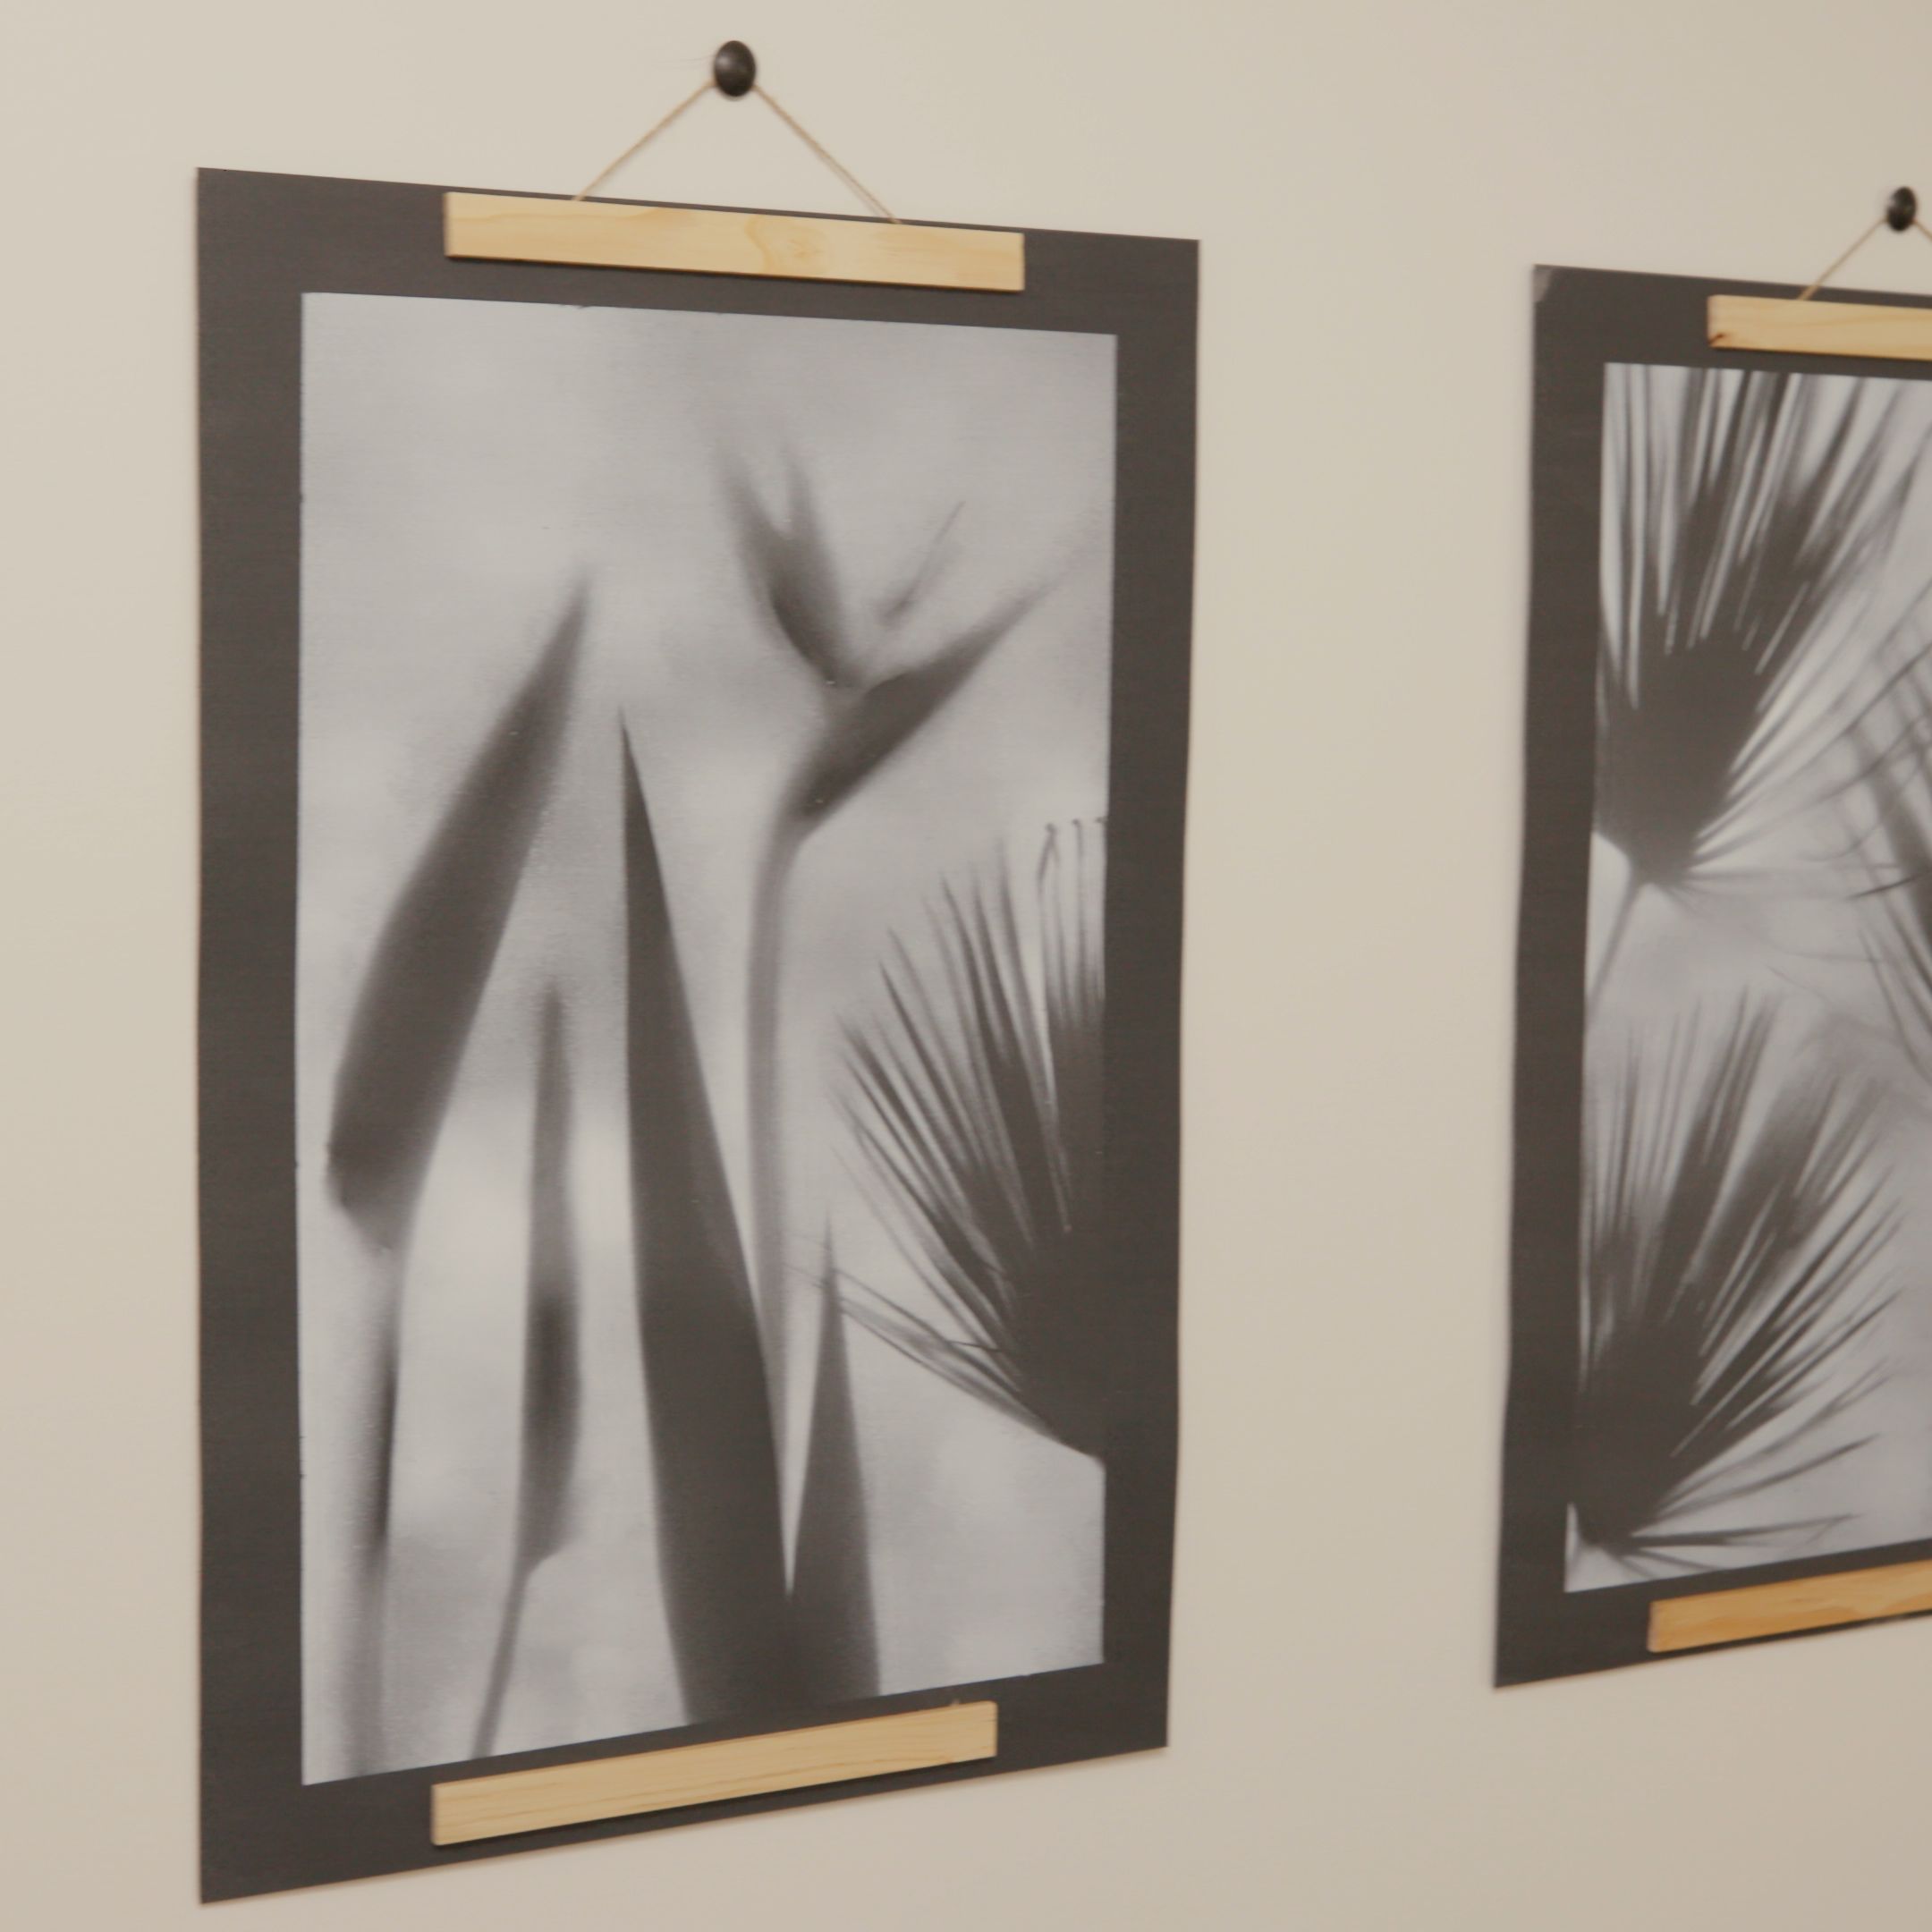 Palm Frond Art Project -   17 plants Art decor ideas